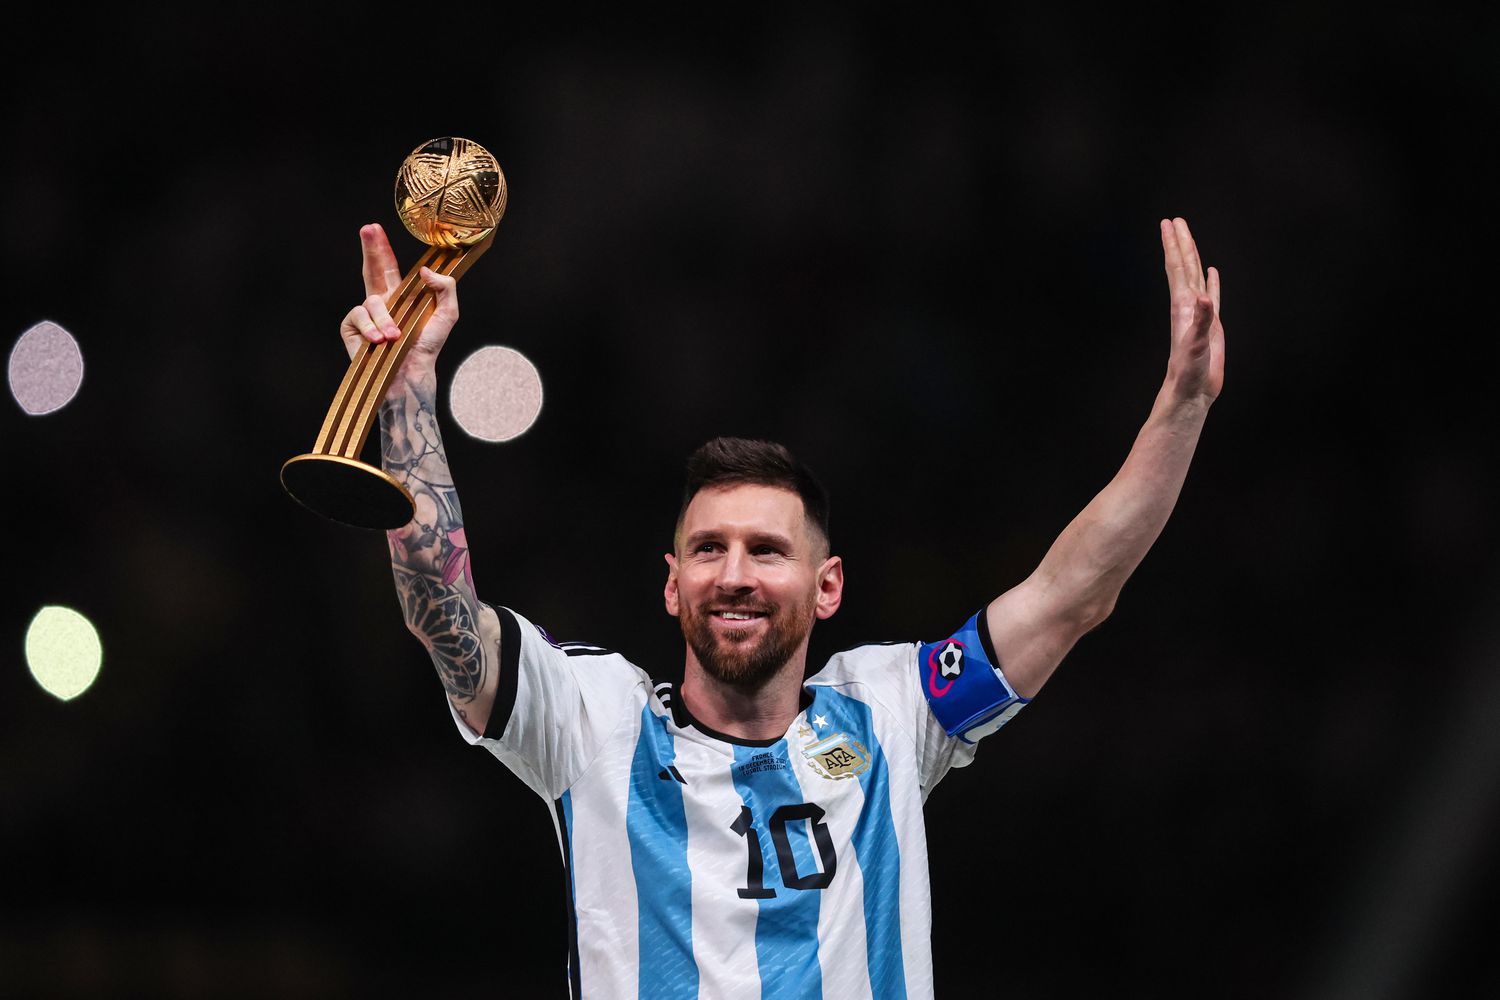 Messi là siêu sao bóng đá hàng đầu thế giới người Argentina